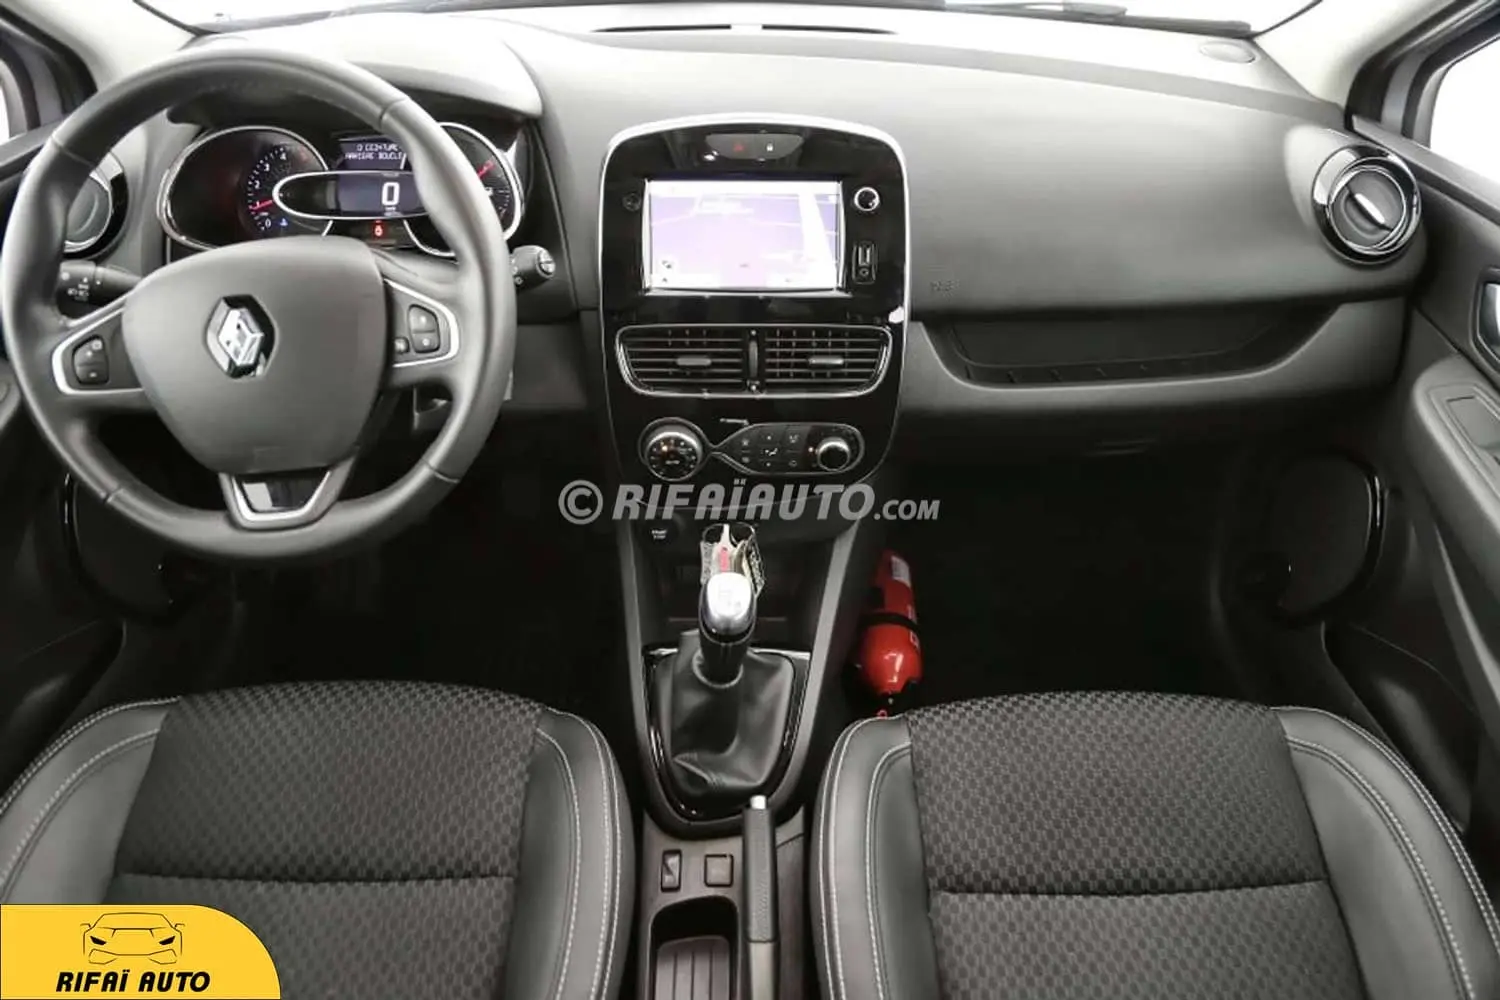 Przegląd rynku. Używane Renault Clio III z końca produkcji, czy najstarsze  Clio IV? | Francuskie.pl - Dziennik Motoryzacyjny